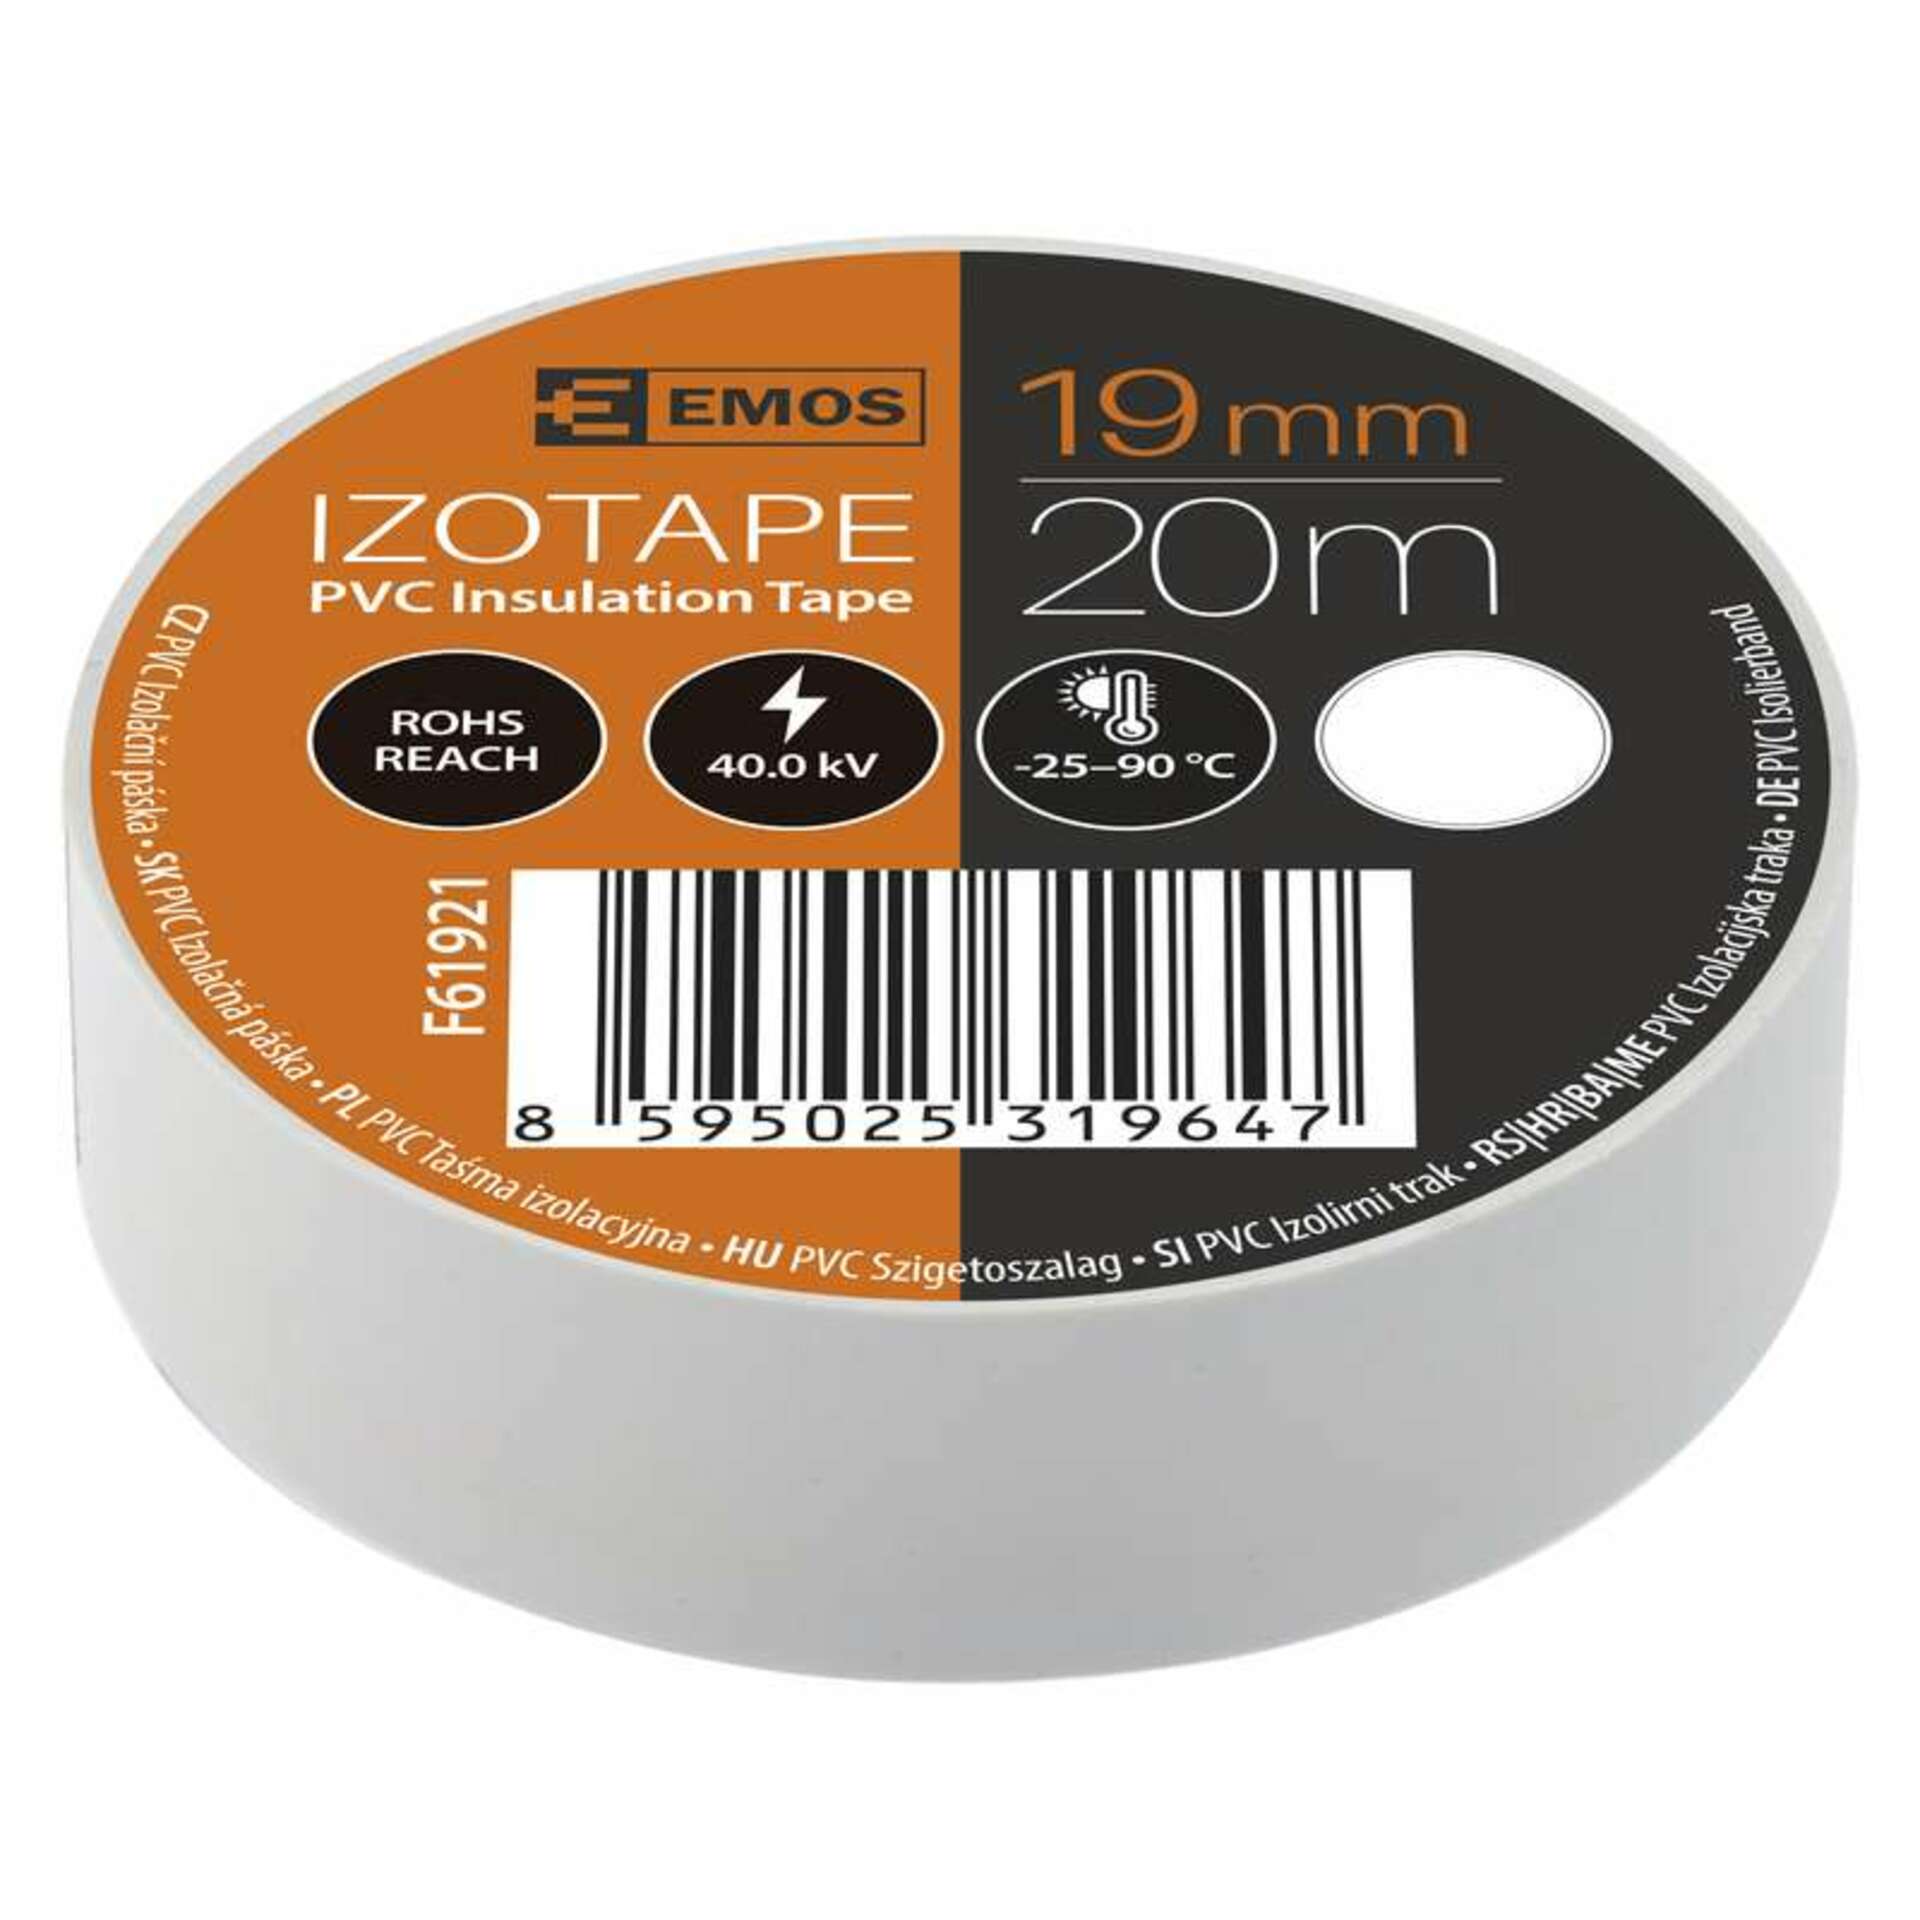 EMOS Izolační páska PVC 19mm / 20m bílá 2001192010